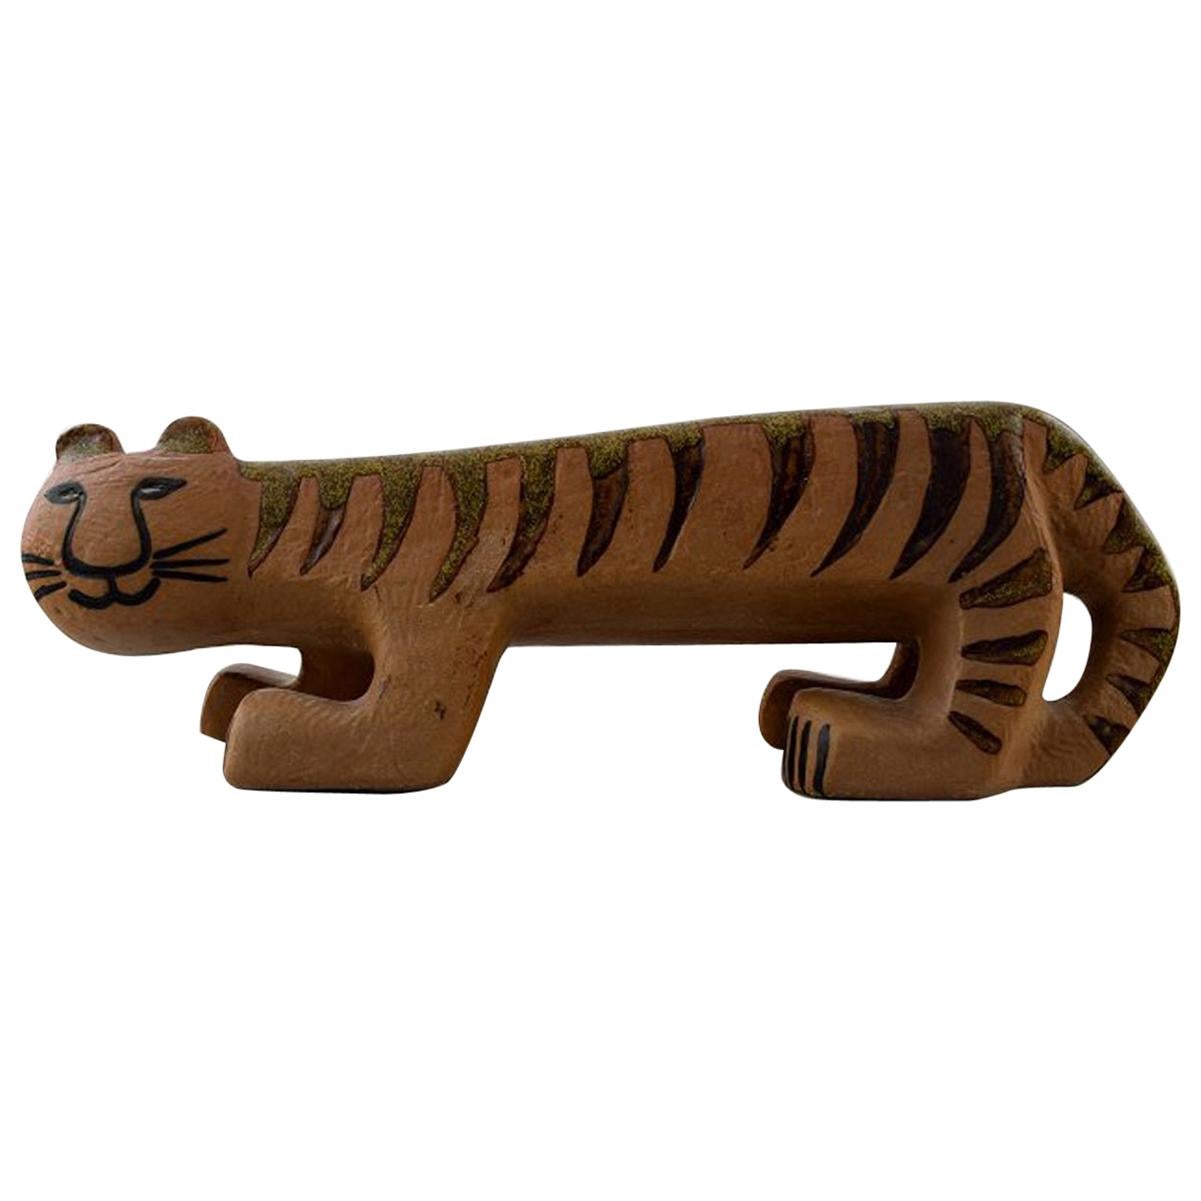 Lisa Larson Gustavsberg Large Tiger/Cat in Ceramics, 1960s-1970s